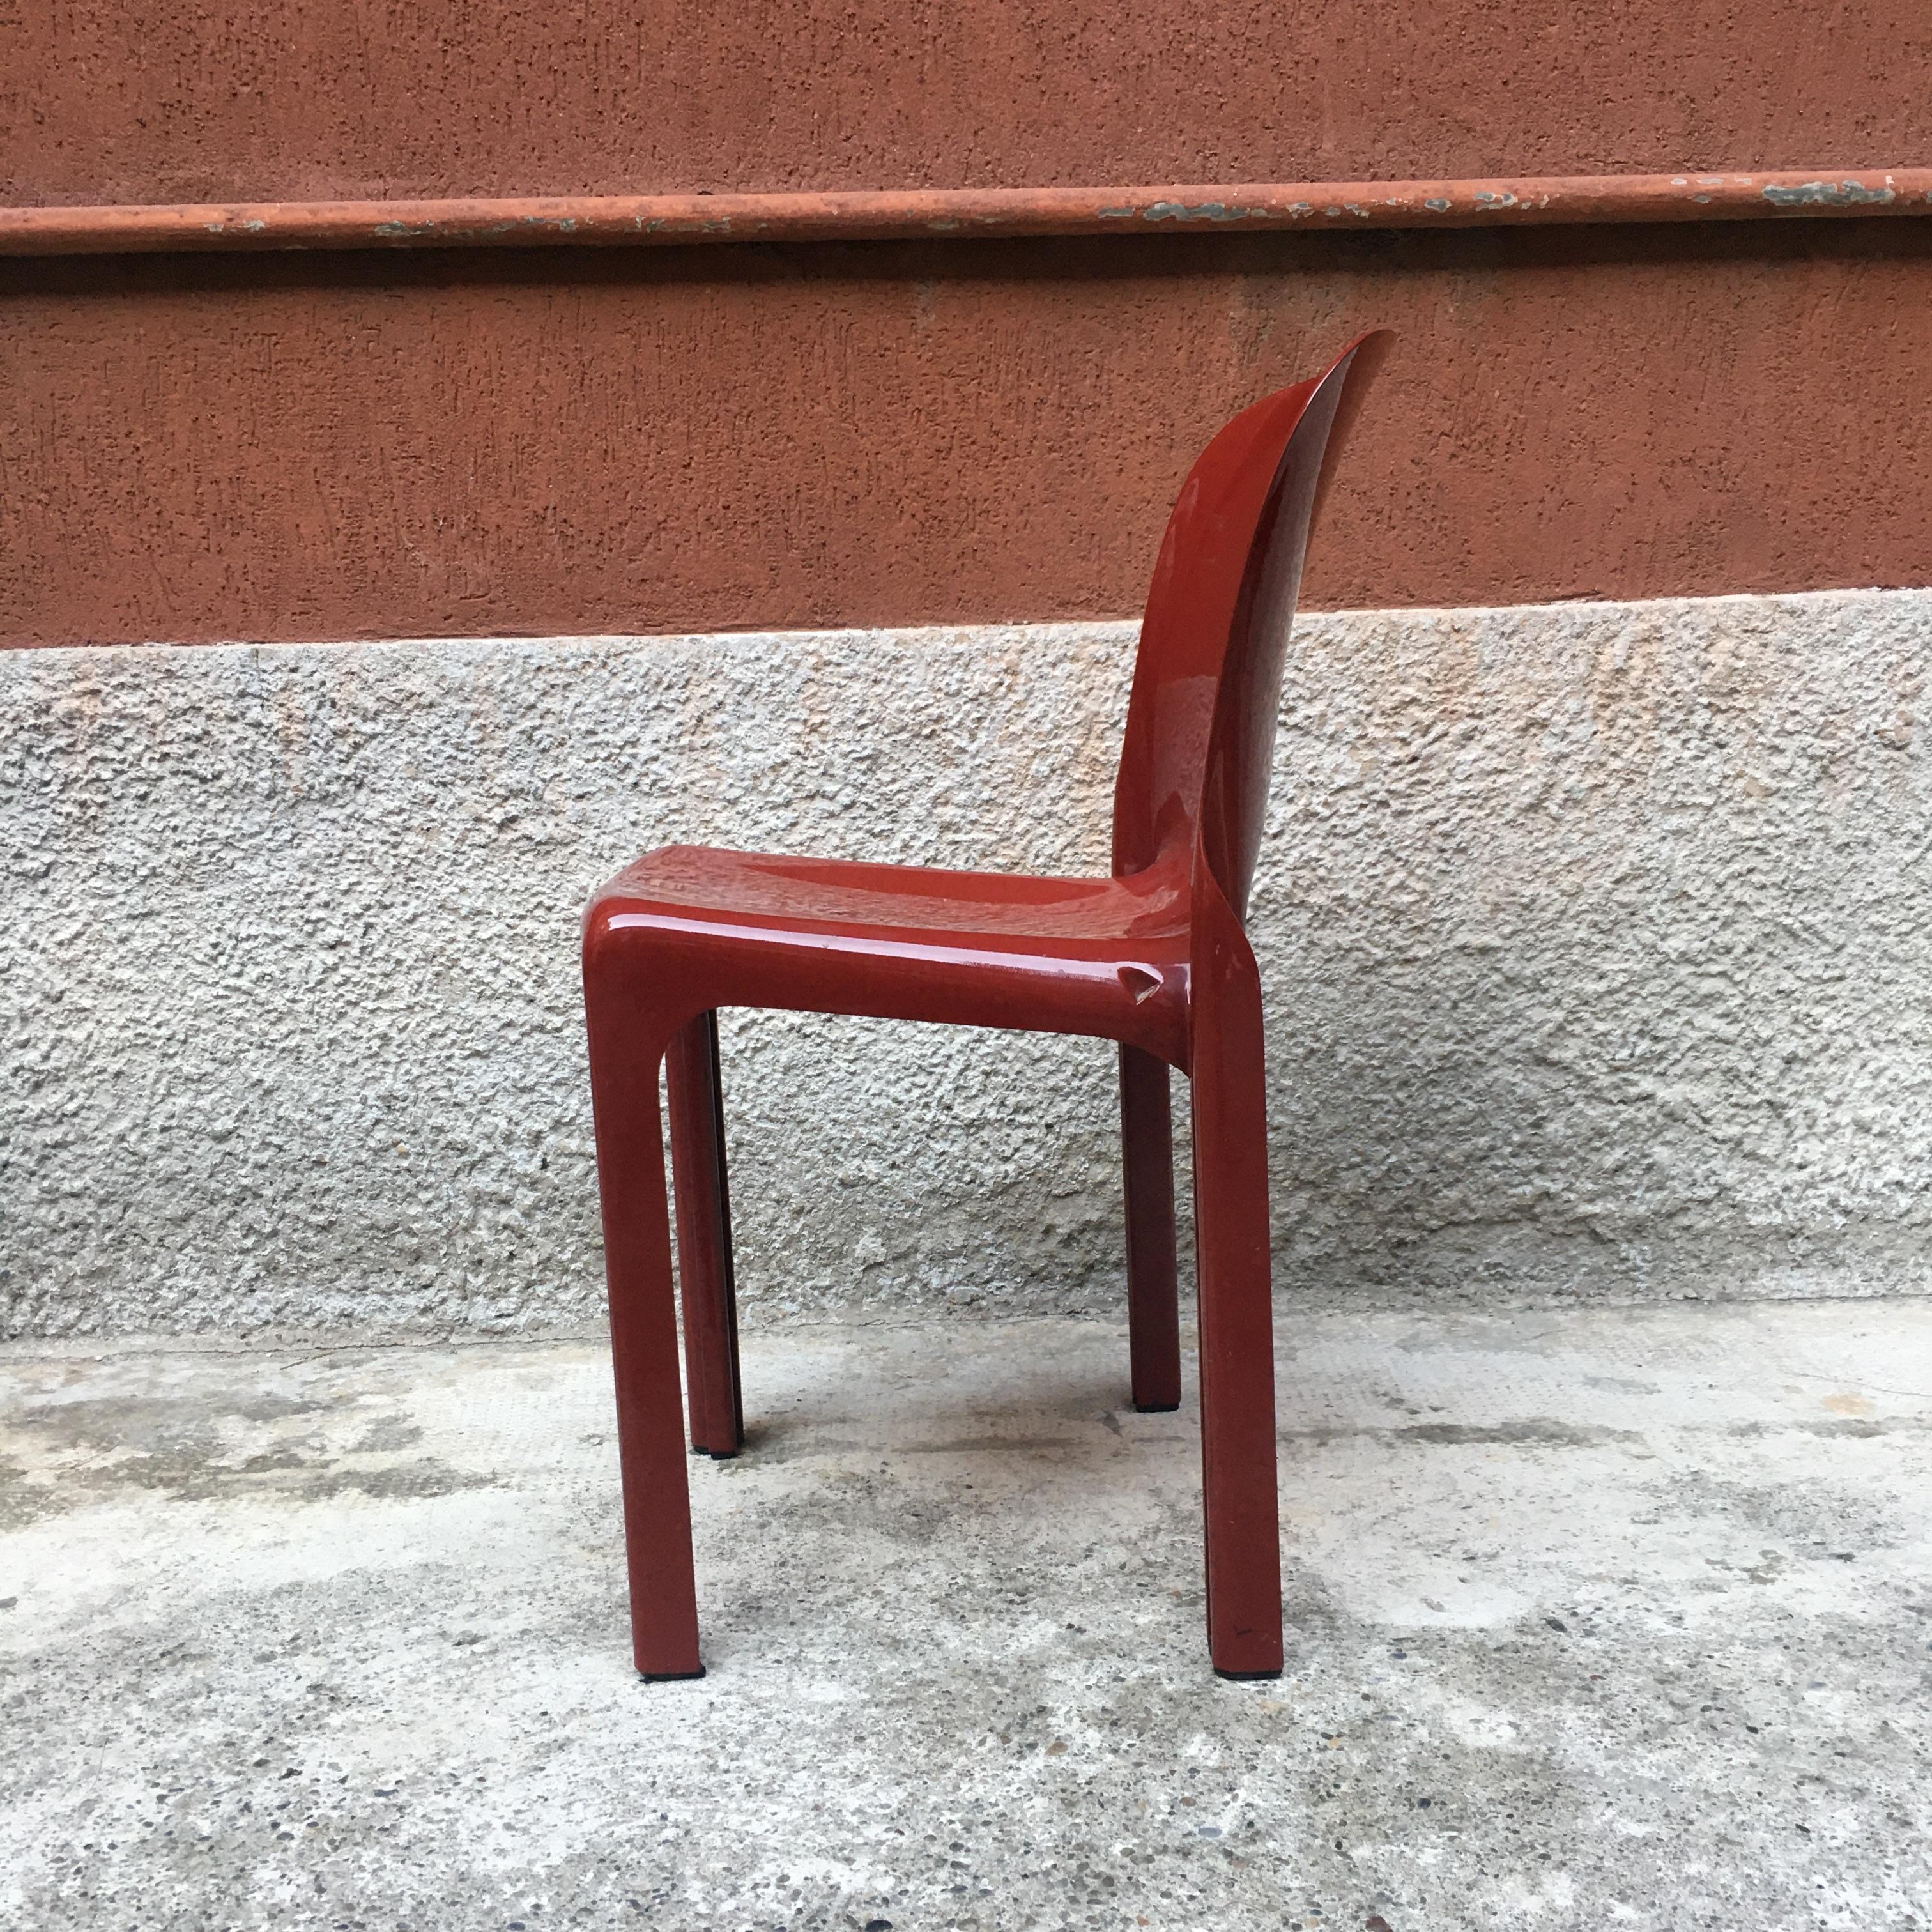 Italian Selene brick red abs desk chair, by Vico Magistretti for Artemide, 1969
Selene desk chair, with structure in brick red abs
Designed by Vico Magistretti for Artemide in 1969
Perfect conditions.